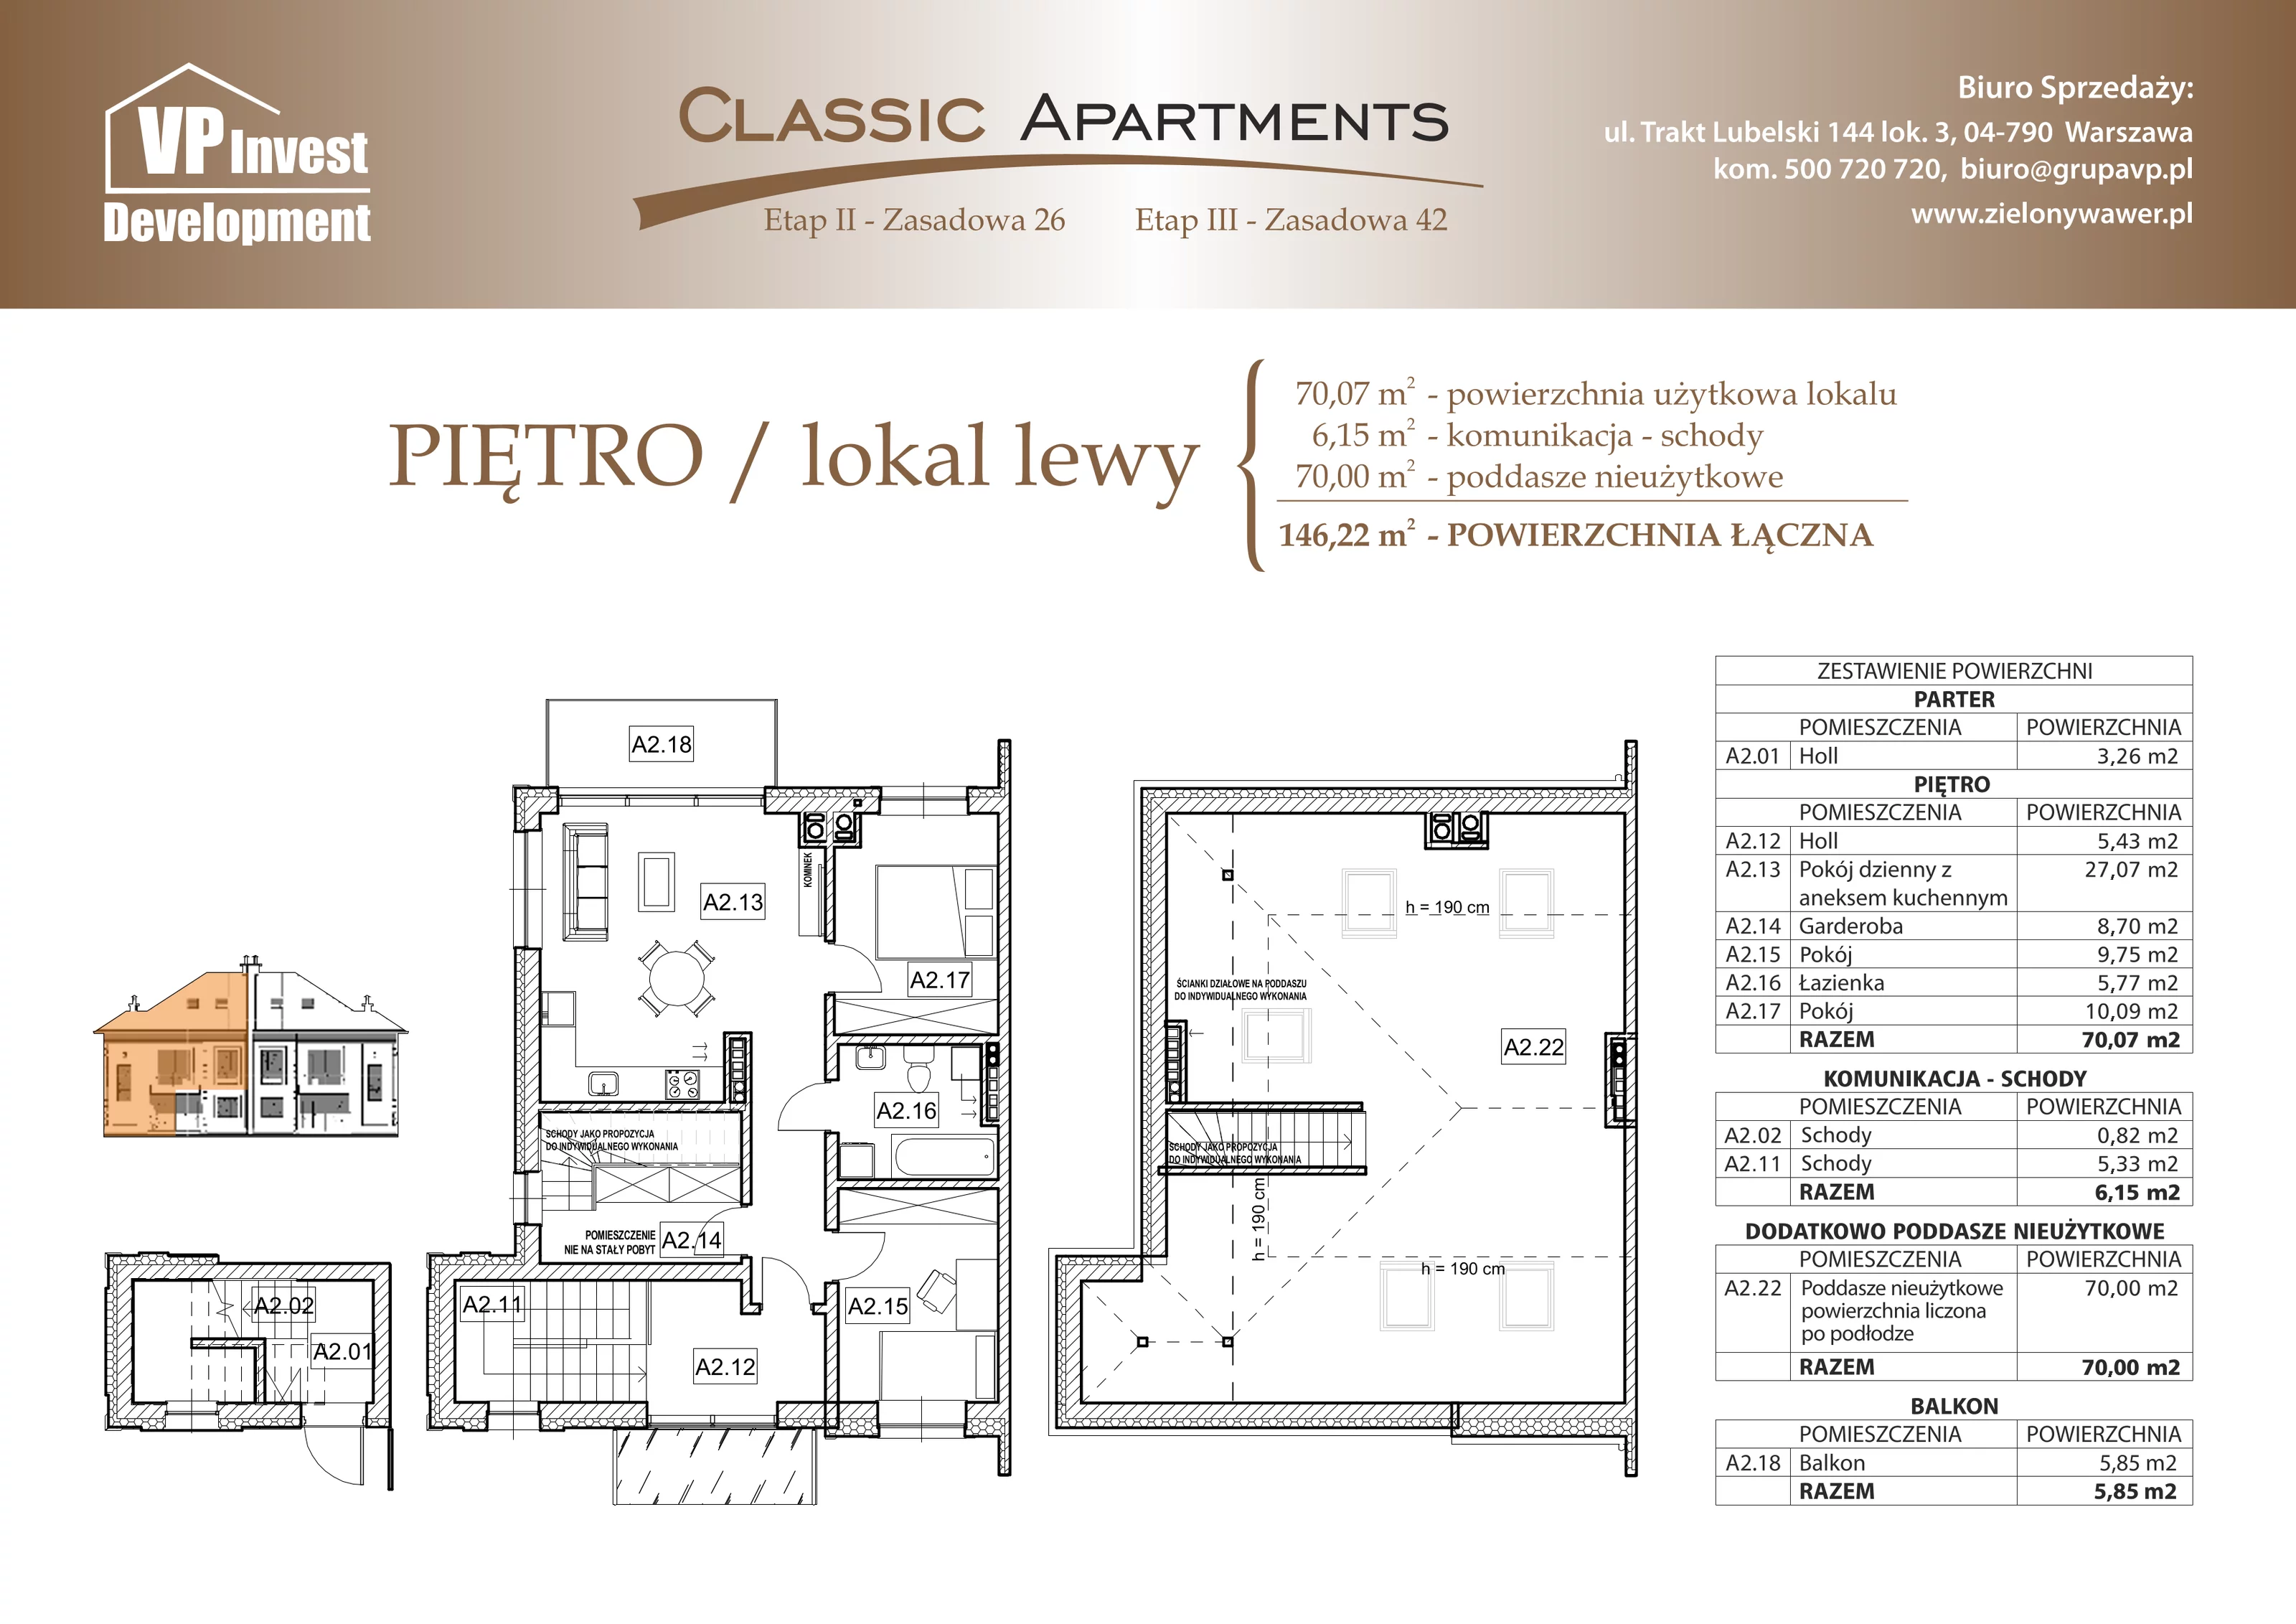 Apartament 70,07 m², piętro 1, oferta nr CA5/8, Classic Apartments II, Warszawa, Wawer, Wawer, ul. Zasadowa 42